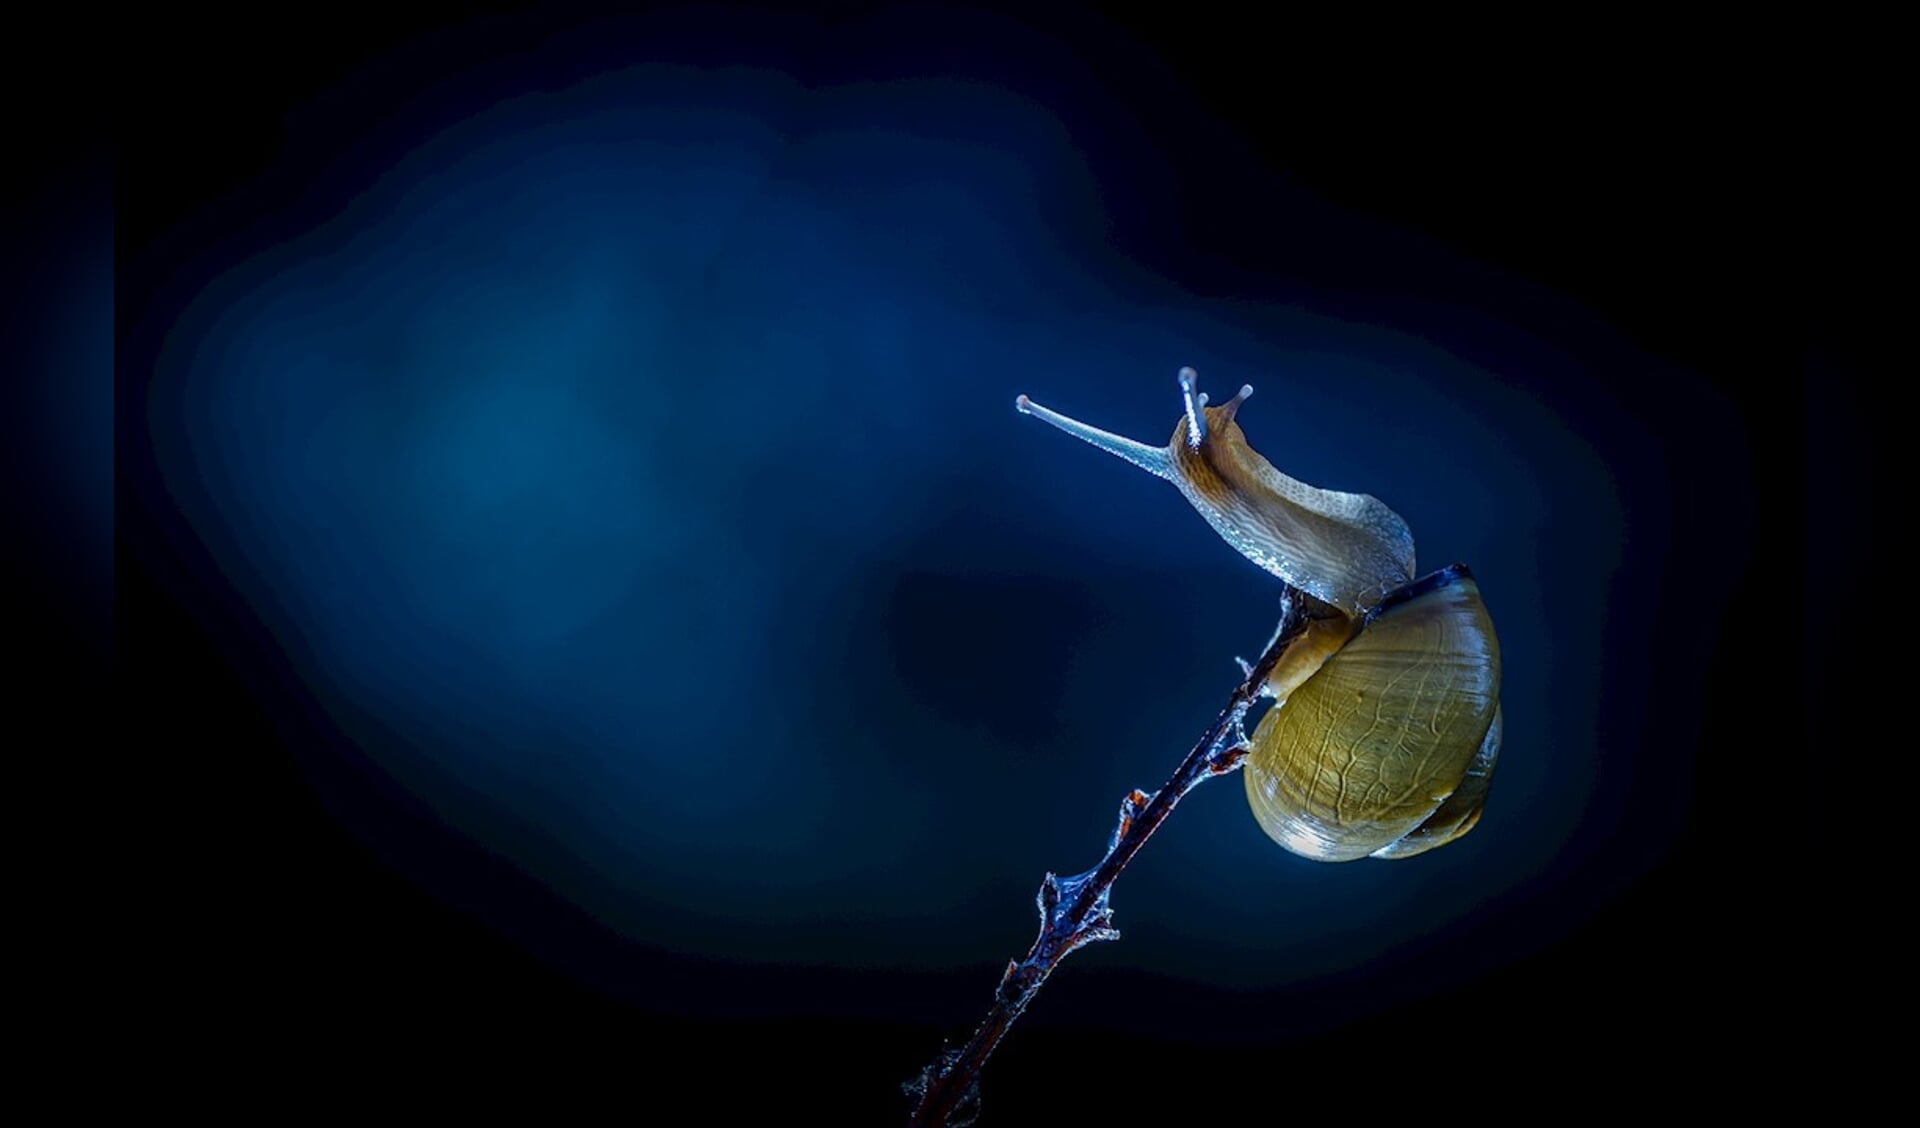 De slak, gefotografeerd door Peter Ruijs.